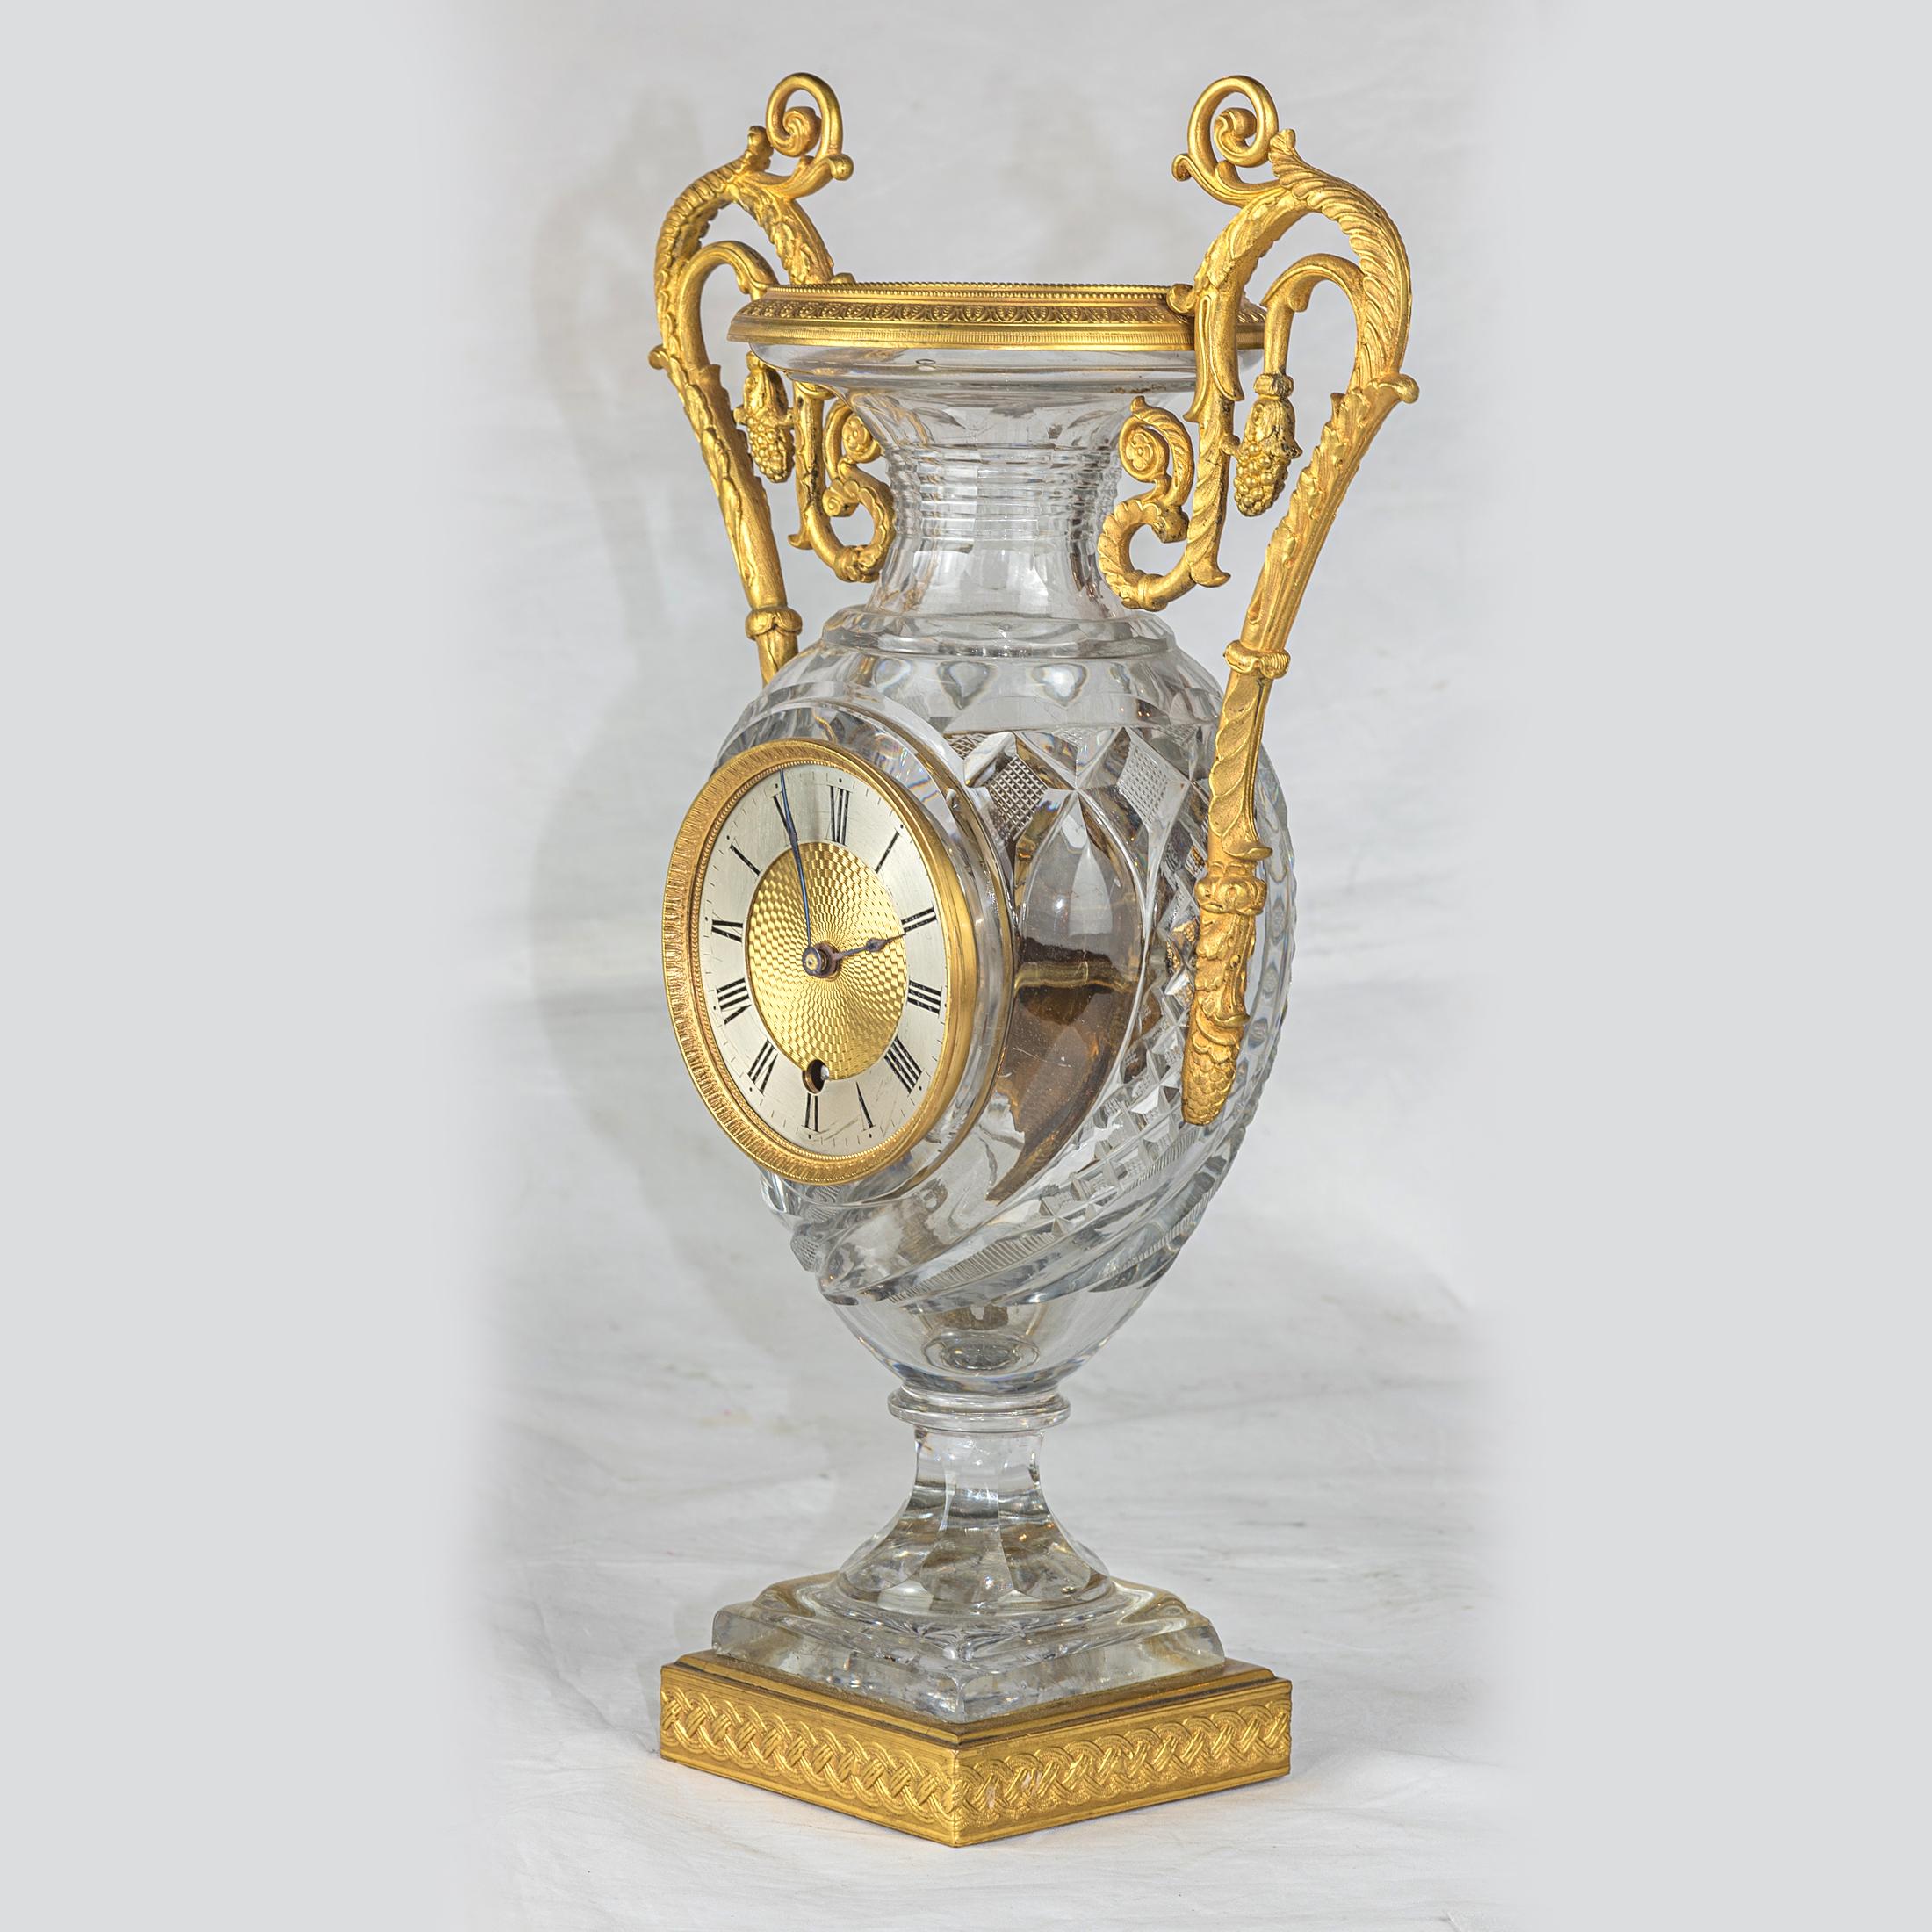 Pendule Médicis en cristal taillé en forme de vase, montée en bronze doré. Deux poignées dorées avec feuillage.

Origine : Français
Date : vers 1810
Dimension : 14 x 8 3/4 x 4 1/4 pouces